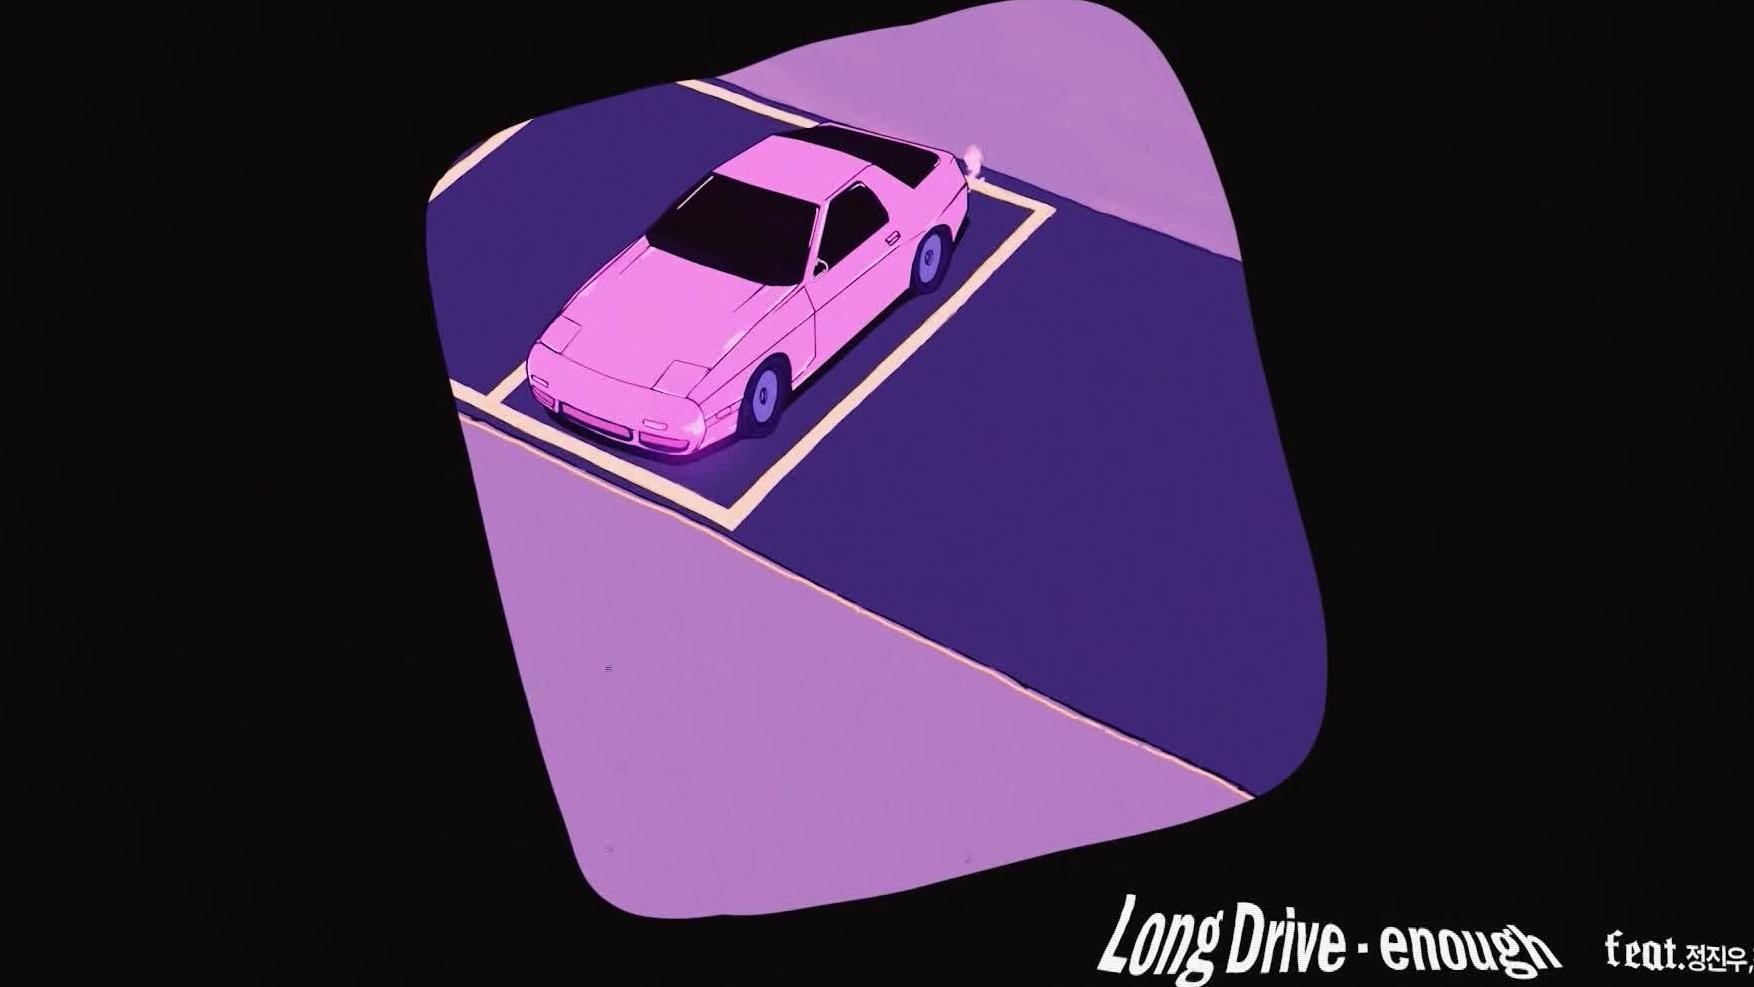 Long Drive - enough